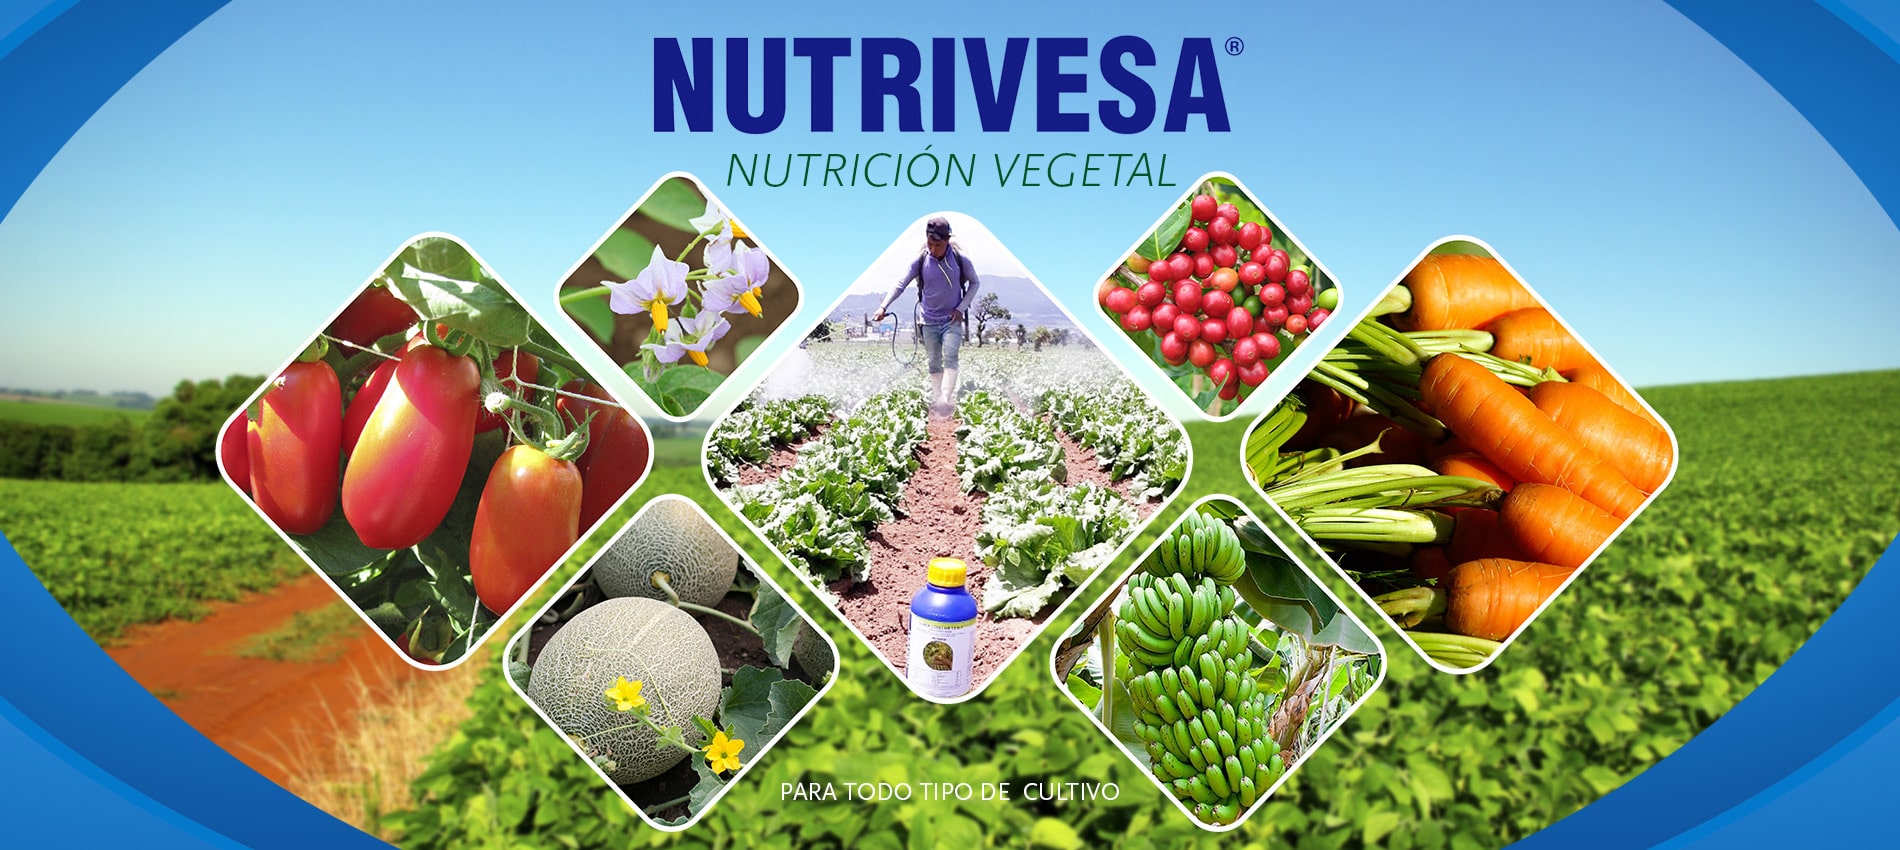 Nutrición Vegetal NUTRIVESA | Nutrivesa